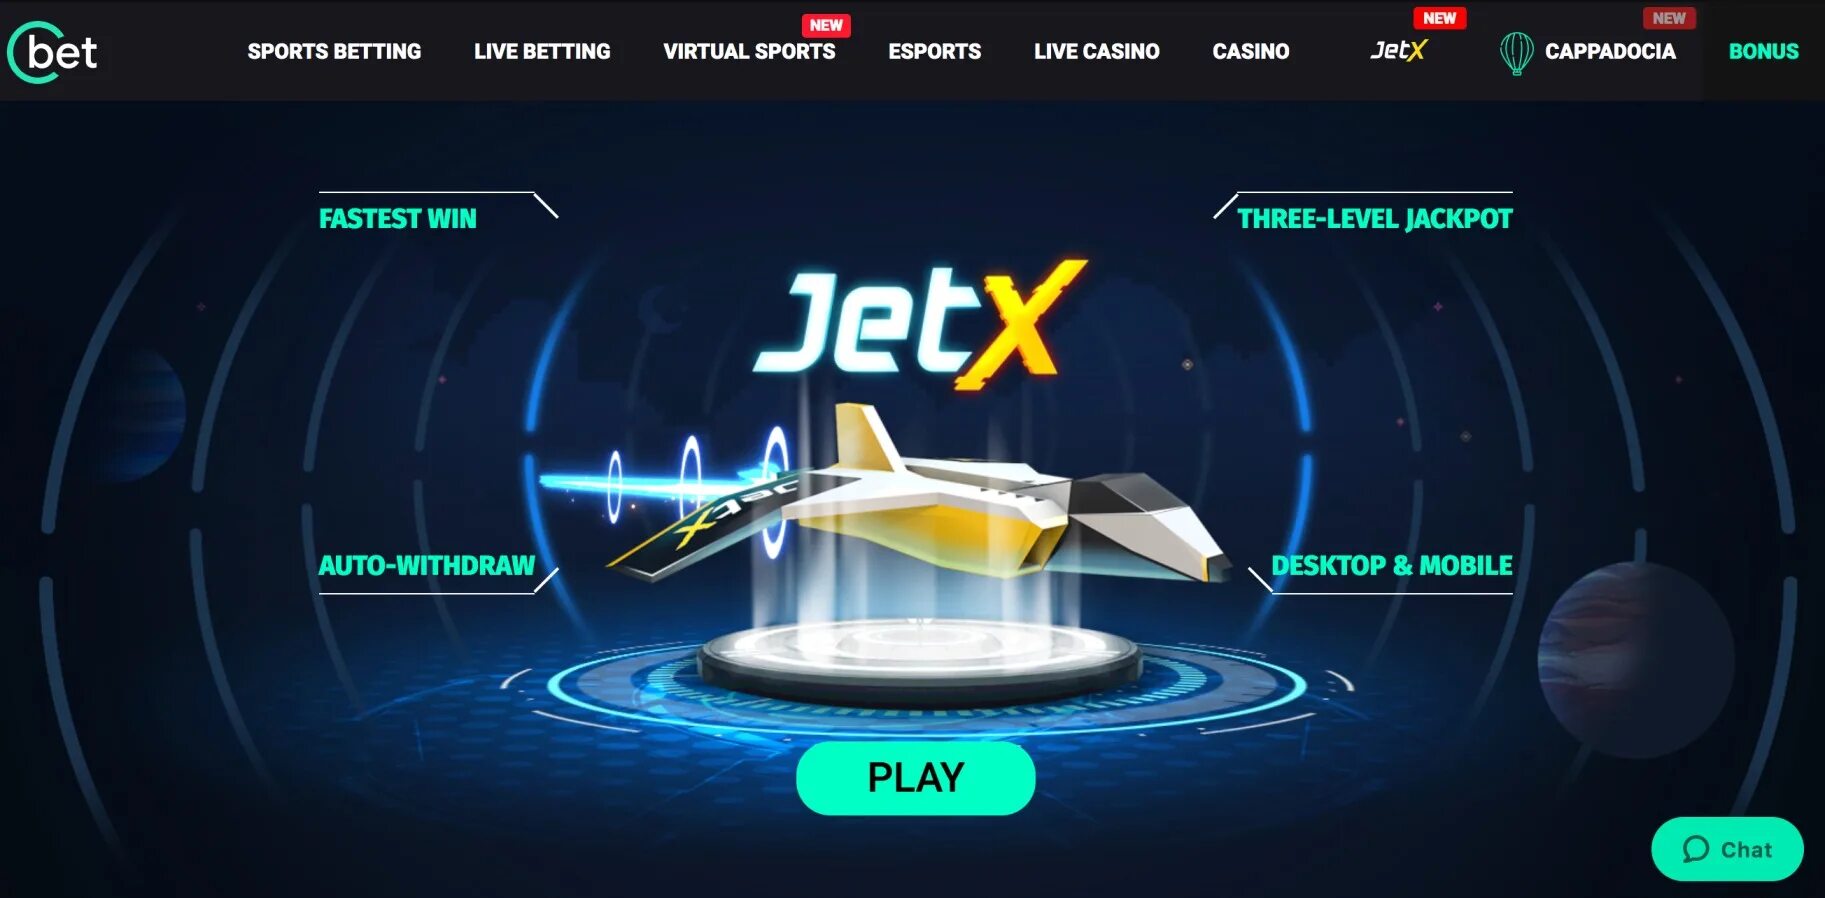 JETX Casino. Jet x. Jet x игра казино. JETX Slot. Jet casino на деньги